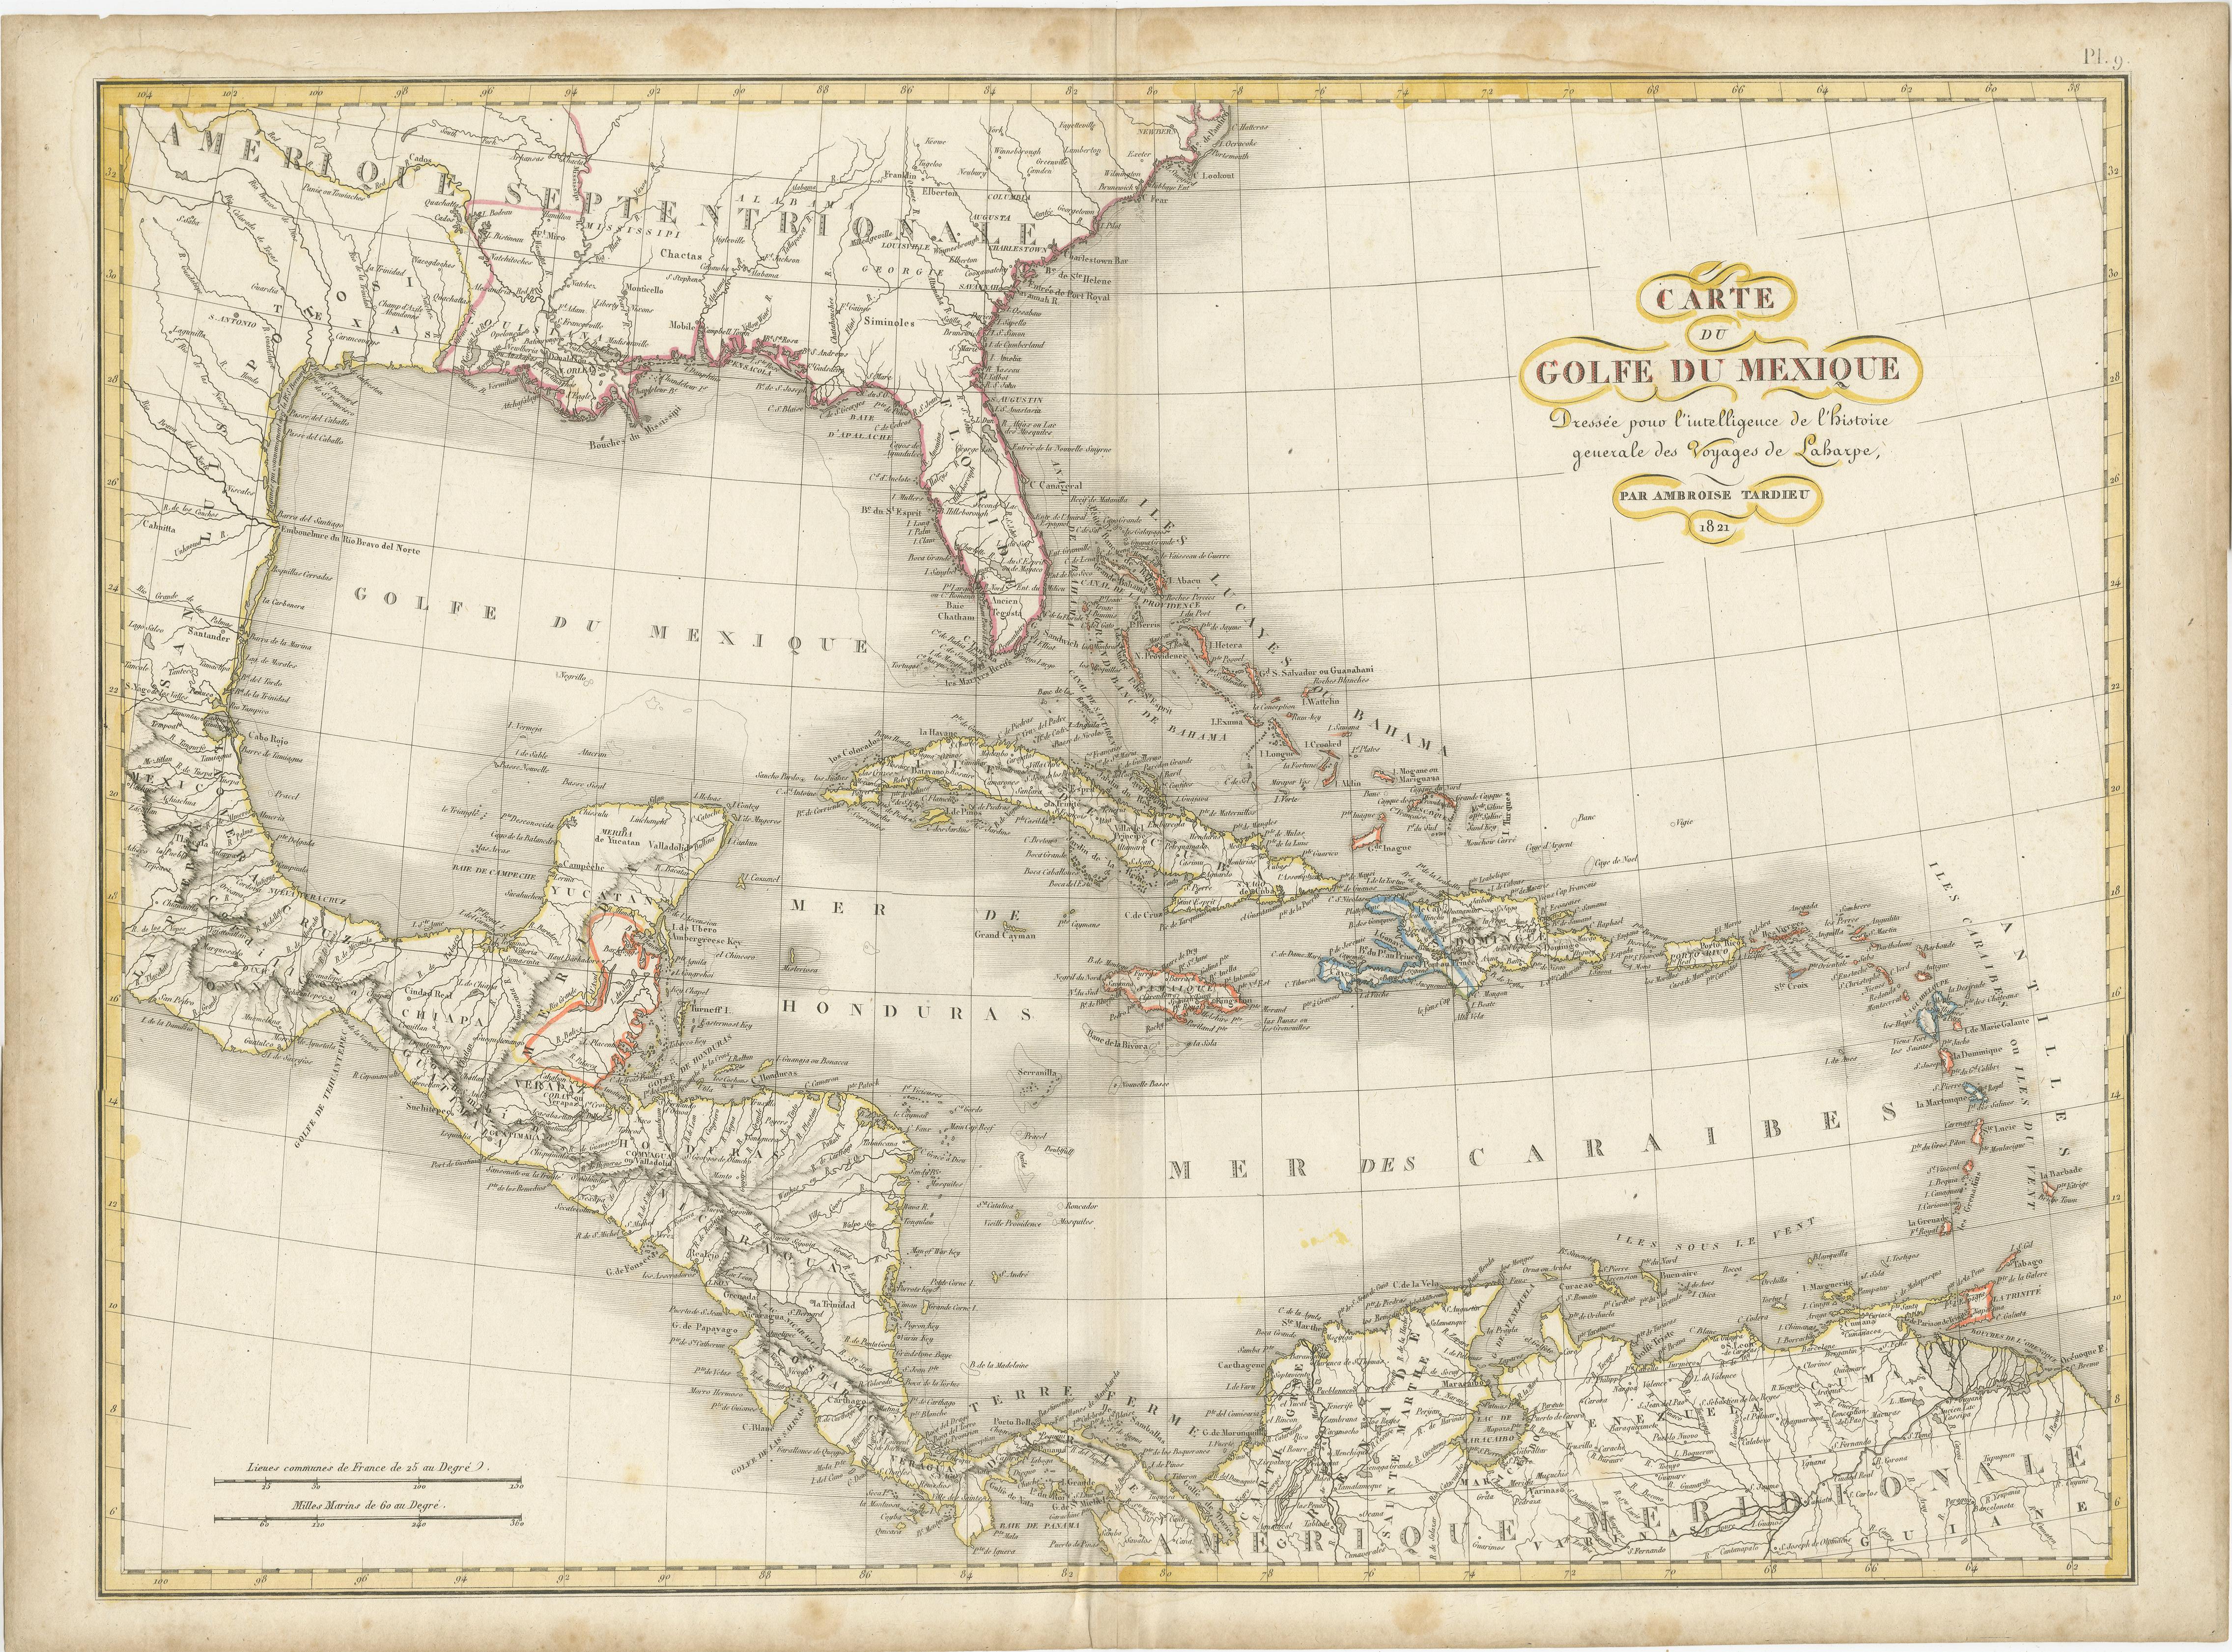 Antike Karte mit dem Titel 'Carte du Golfe du Mexique'. Diese seltene Karte zeigt den Golf von Mexiko und alle Inseln der Westindischen Inseln. Es enthält auch schöne Details über den Süden der Vereinigten Staaten, Mittelamerika und das nördliche